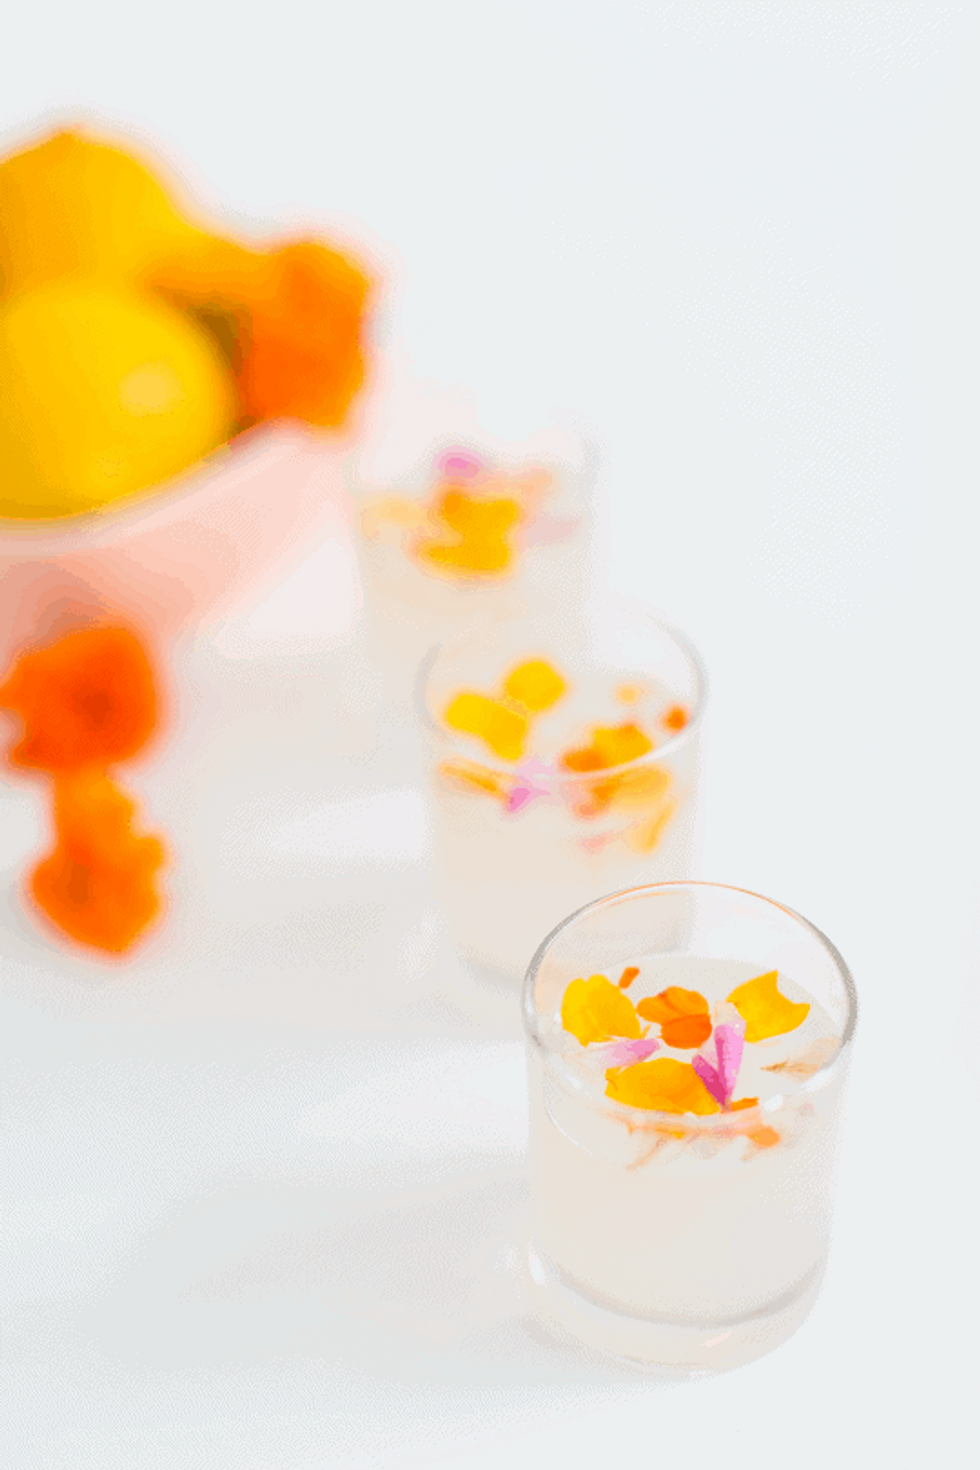 Edible Flower Lemon Jello Shots